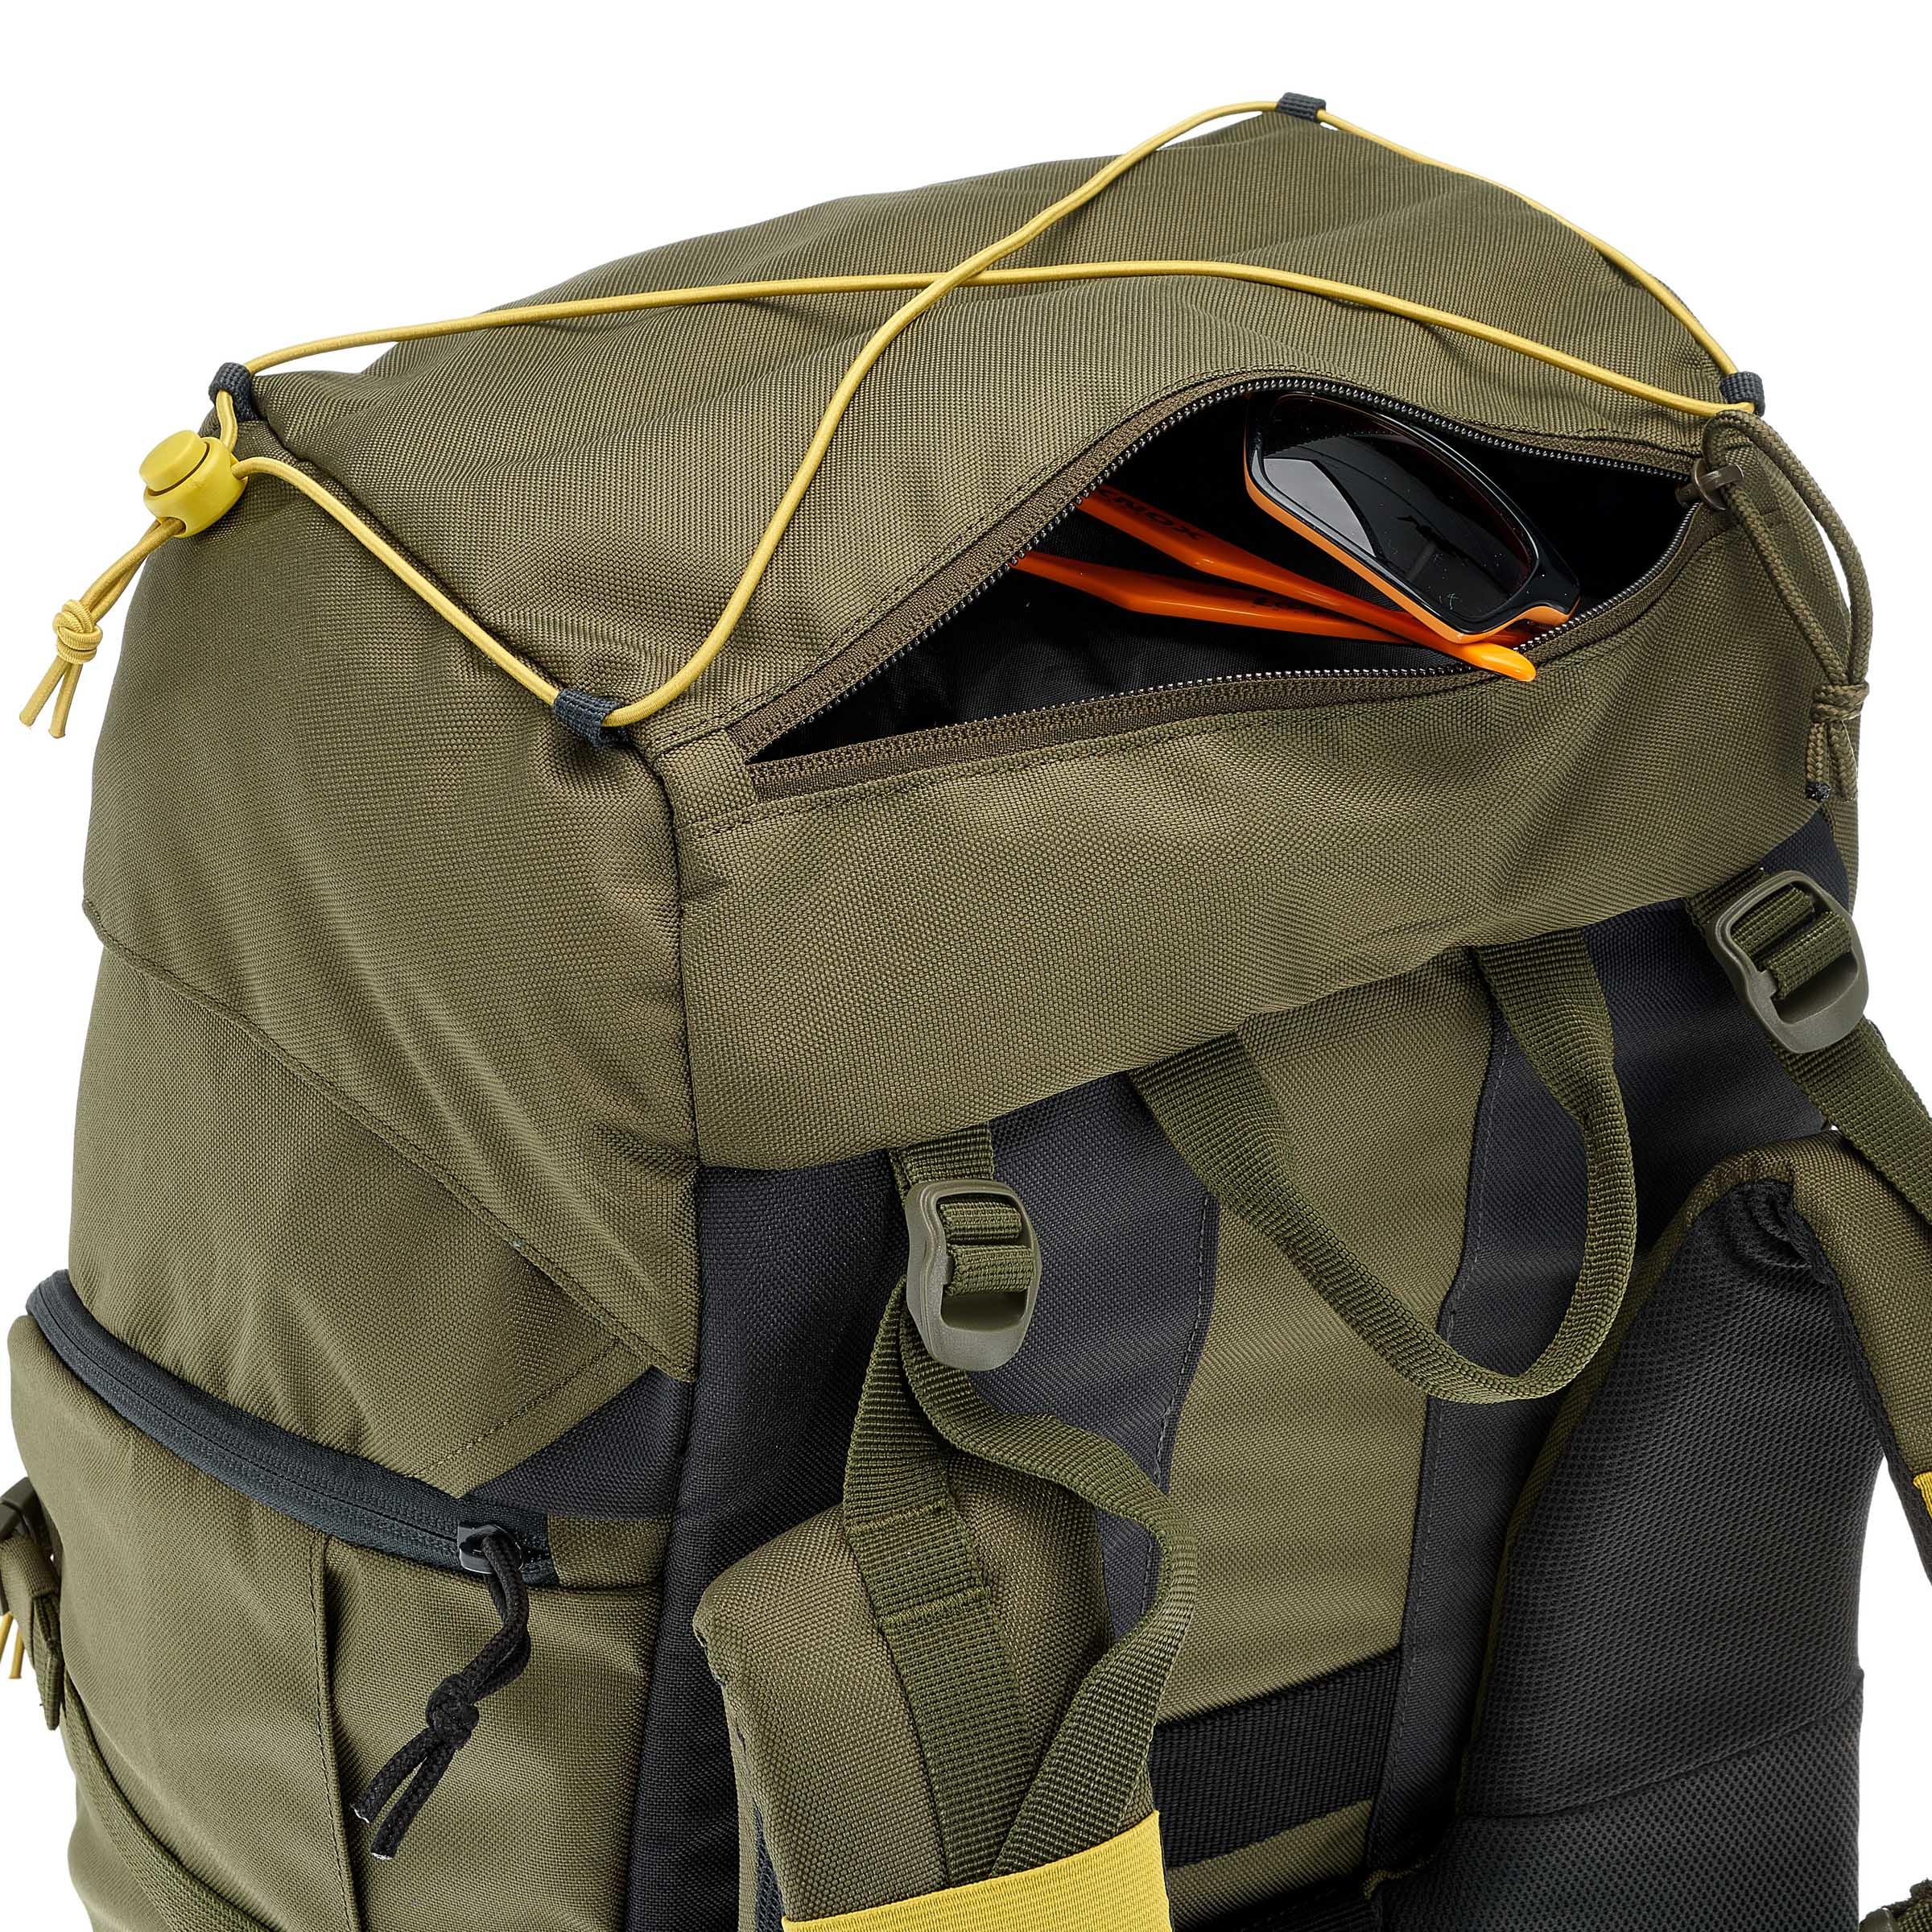 quechua 70l backpack